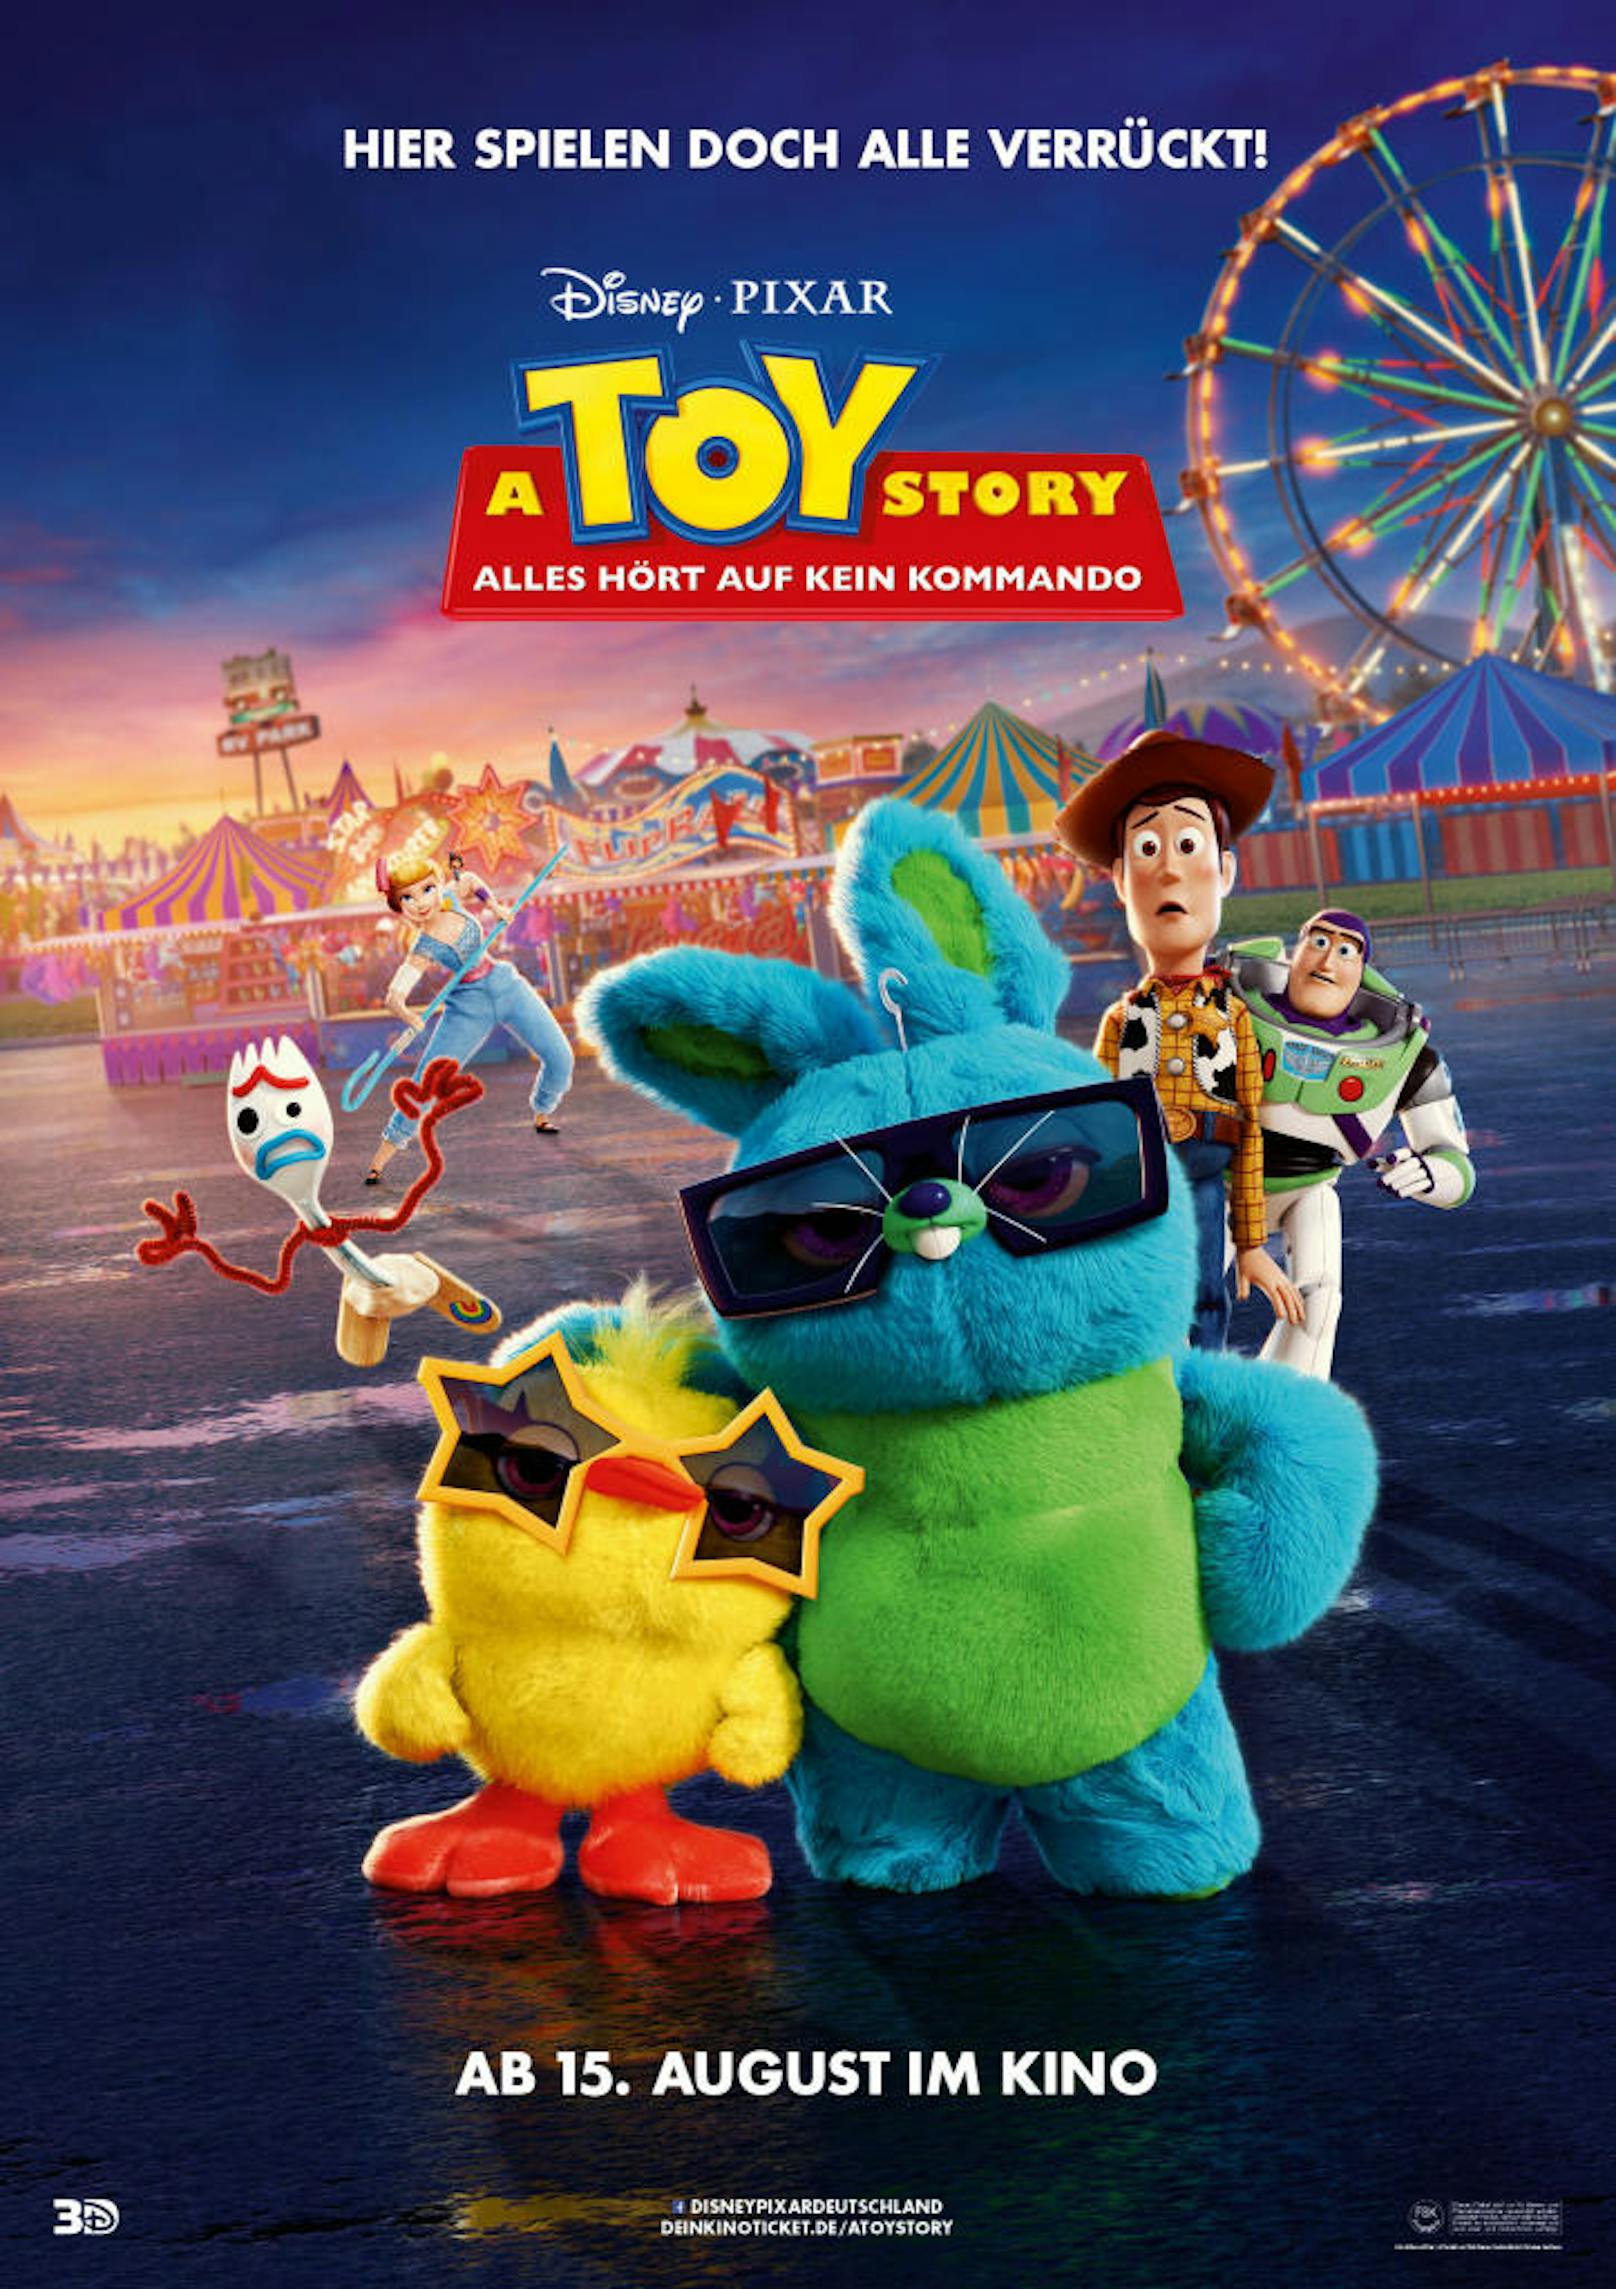 <b>Platz 5 - TOY STORY 4</b>
Weltweites Einspielergebnis: 1.073.394.593 Dollar

"Toy Story", die Abenteuer rund um Woody (Tom Hanks) und Buzz Lightyear (Tim Allen), gehört zu Pixars erfolgreichsten Franchises. <a href="https://www.heute.at/s/toy-story-4-kino-film-review-53084275">Hier geht's zum "Toy Story 4"-Review.</a>